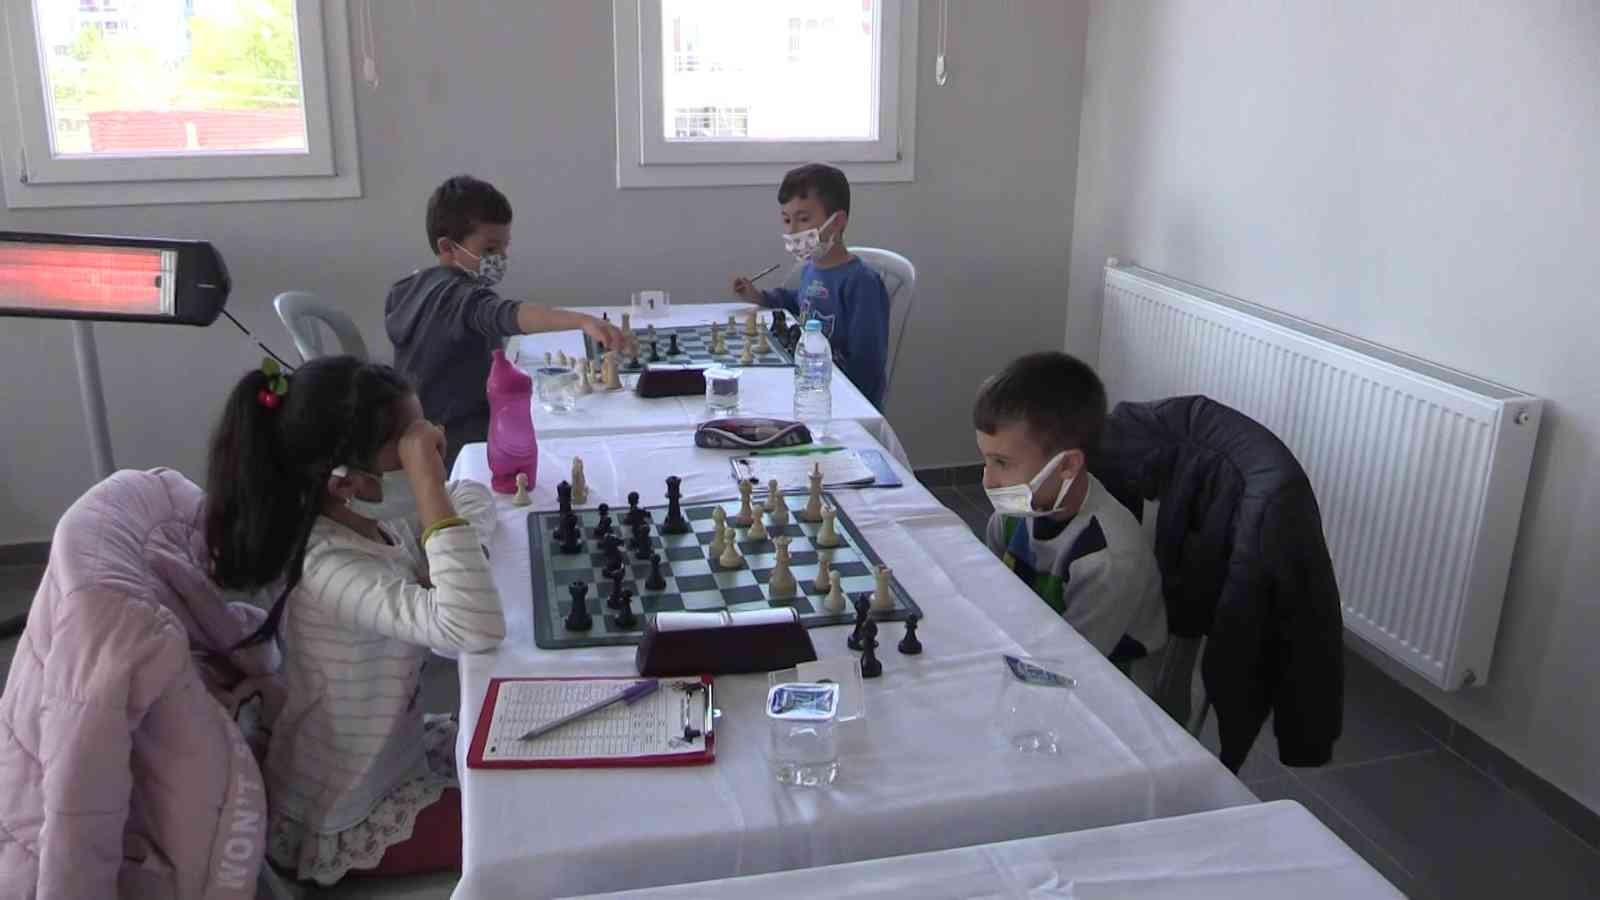 Uşak’ta Cumhuriyet Satranç Turnuvası başladı